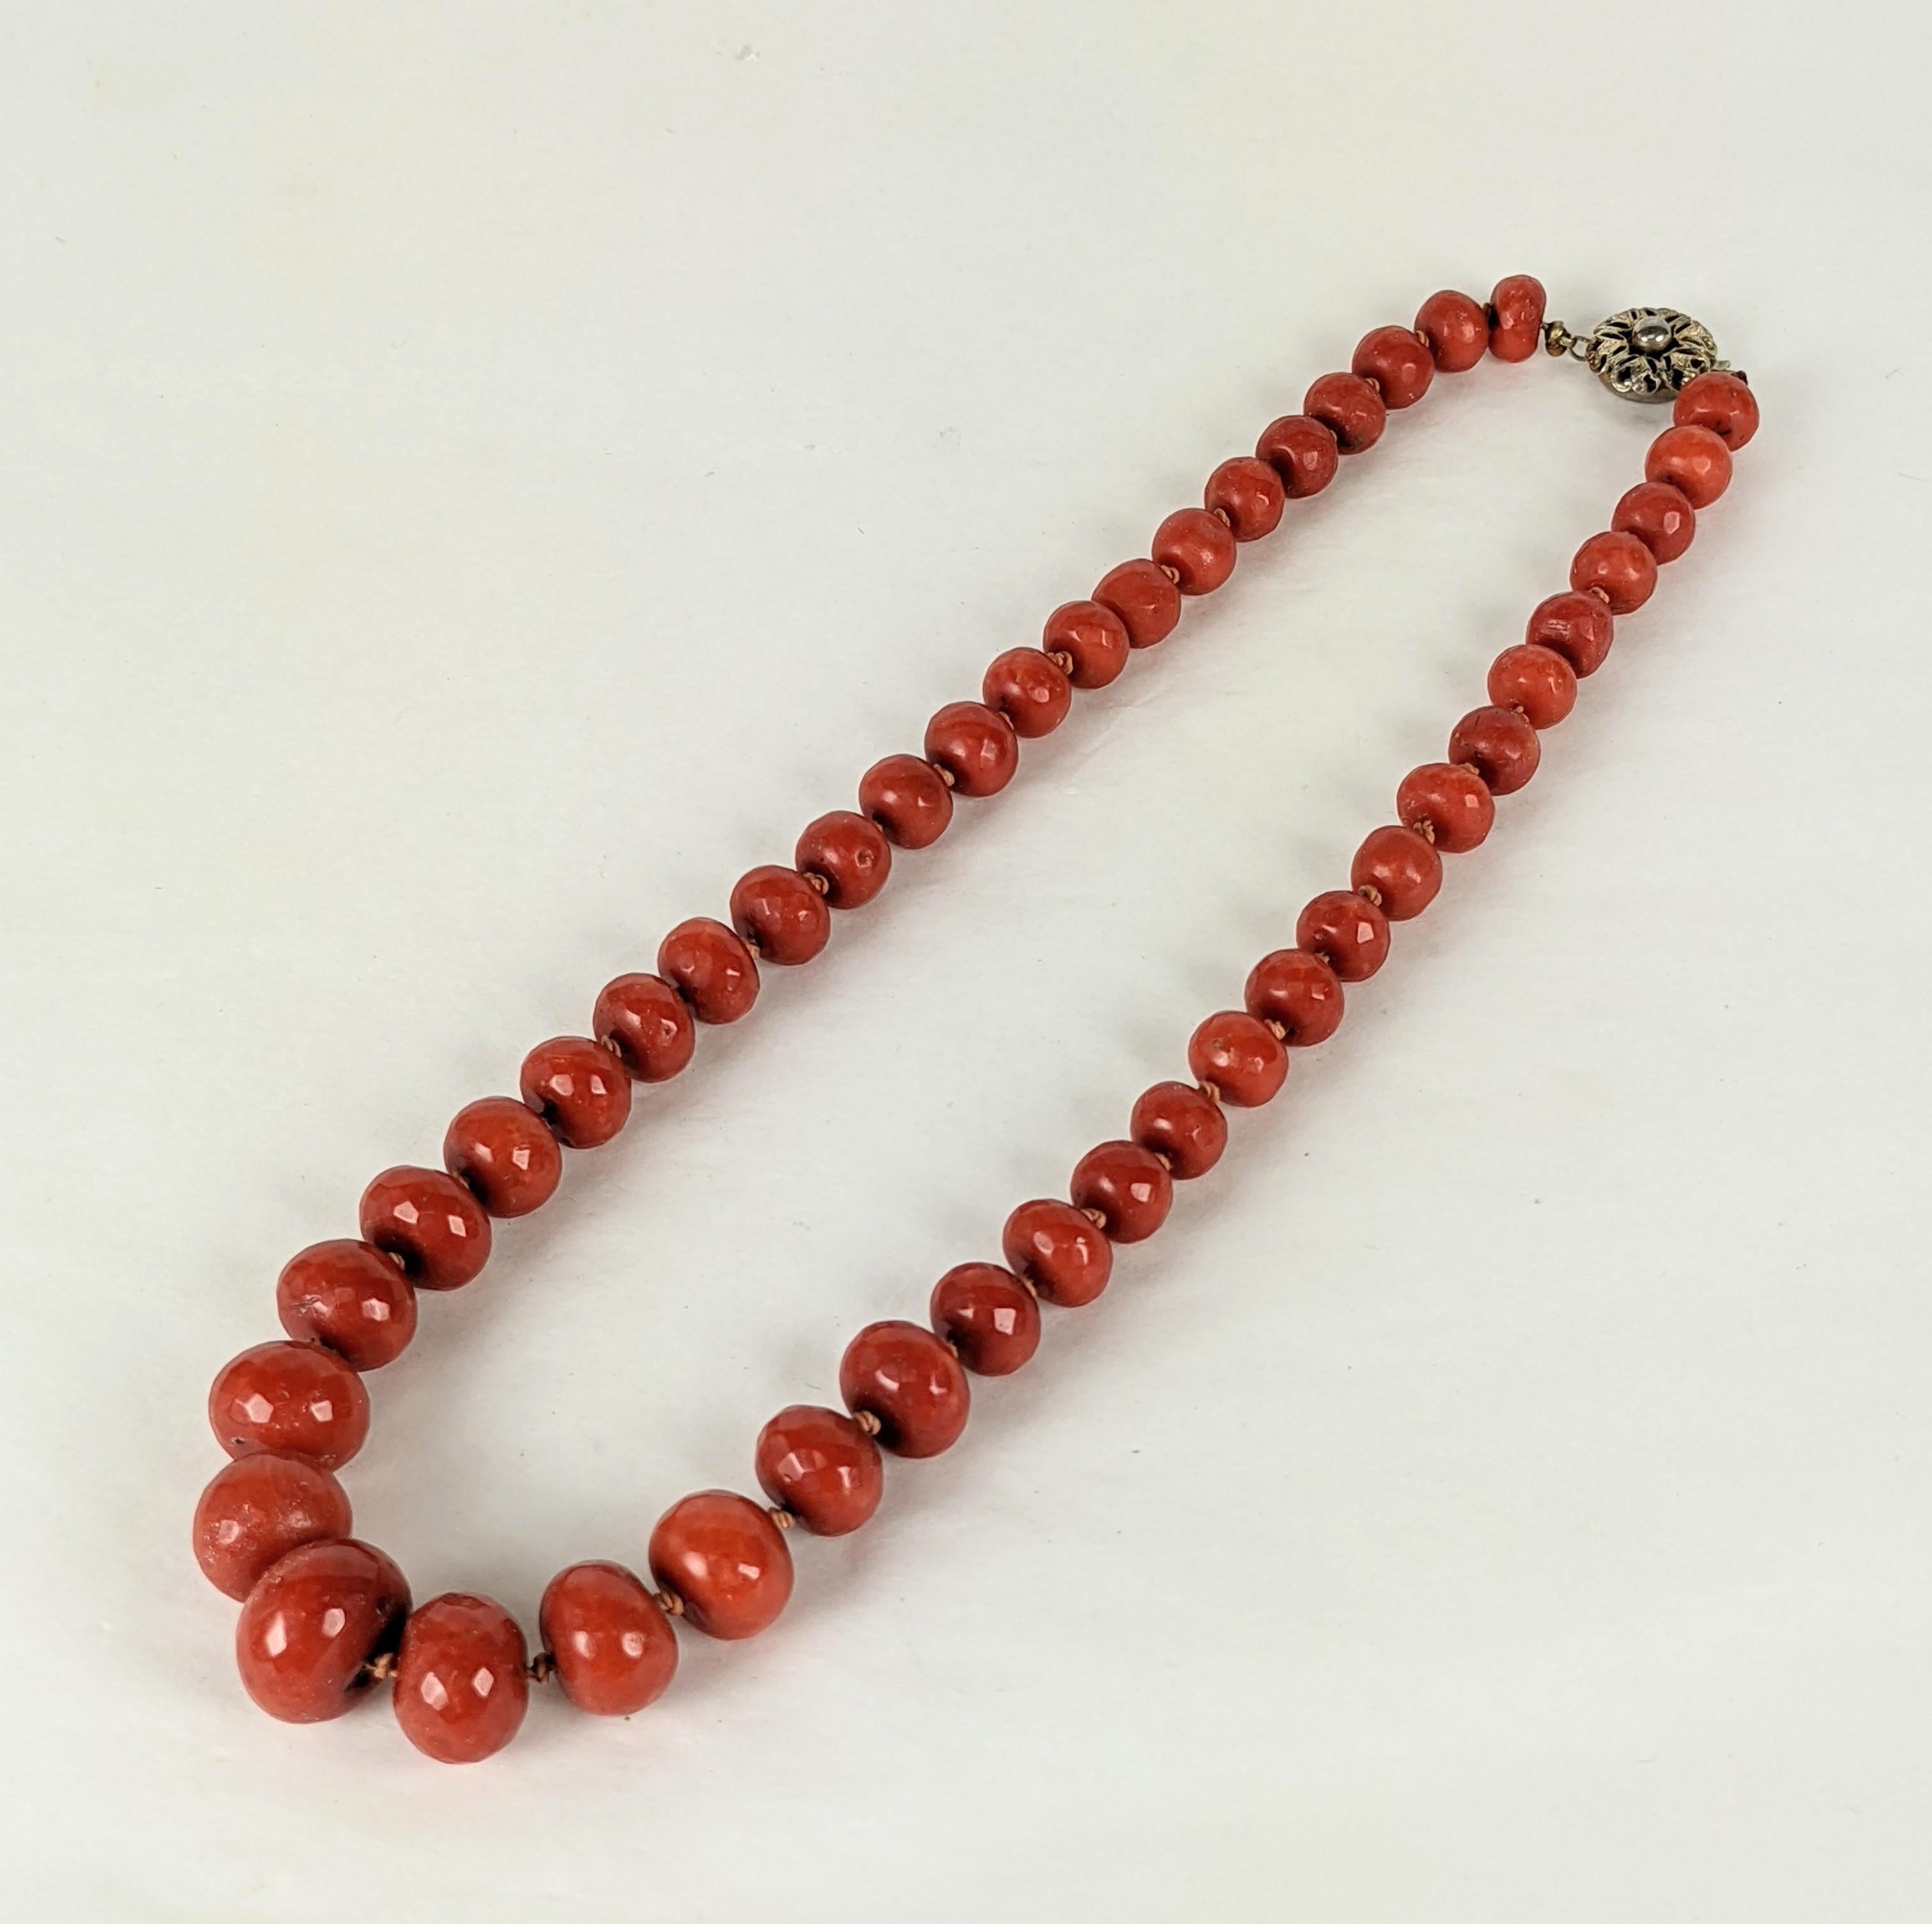 benin coral beads